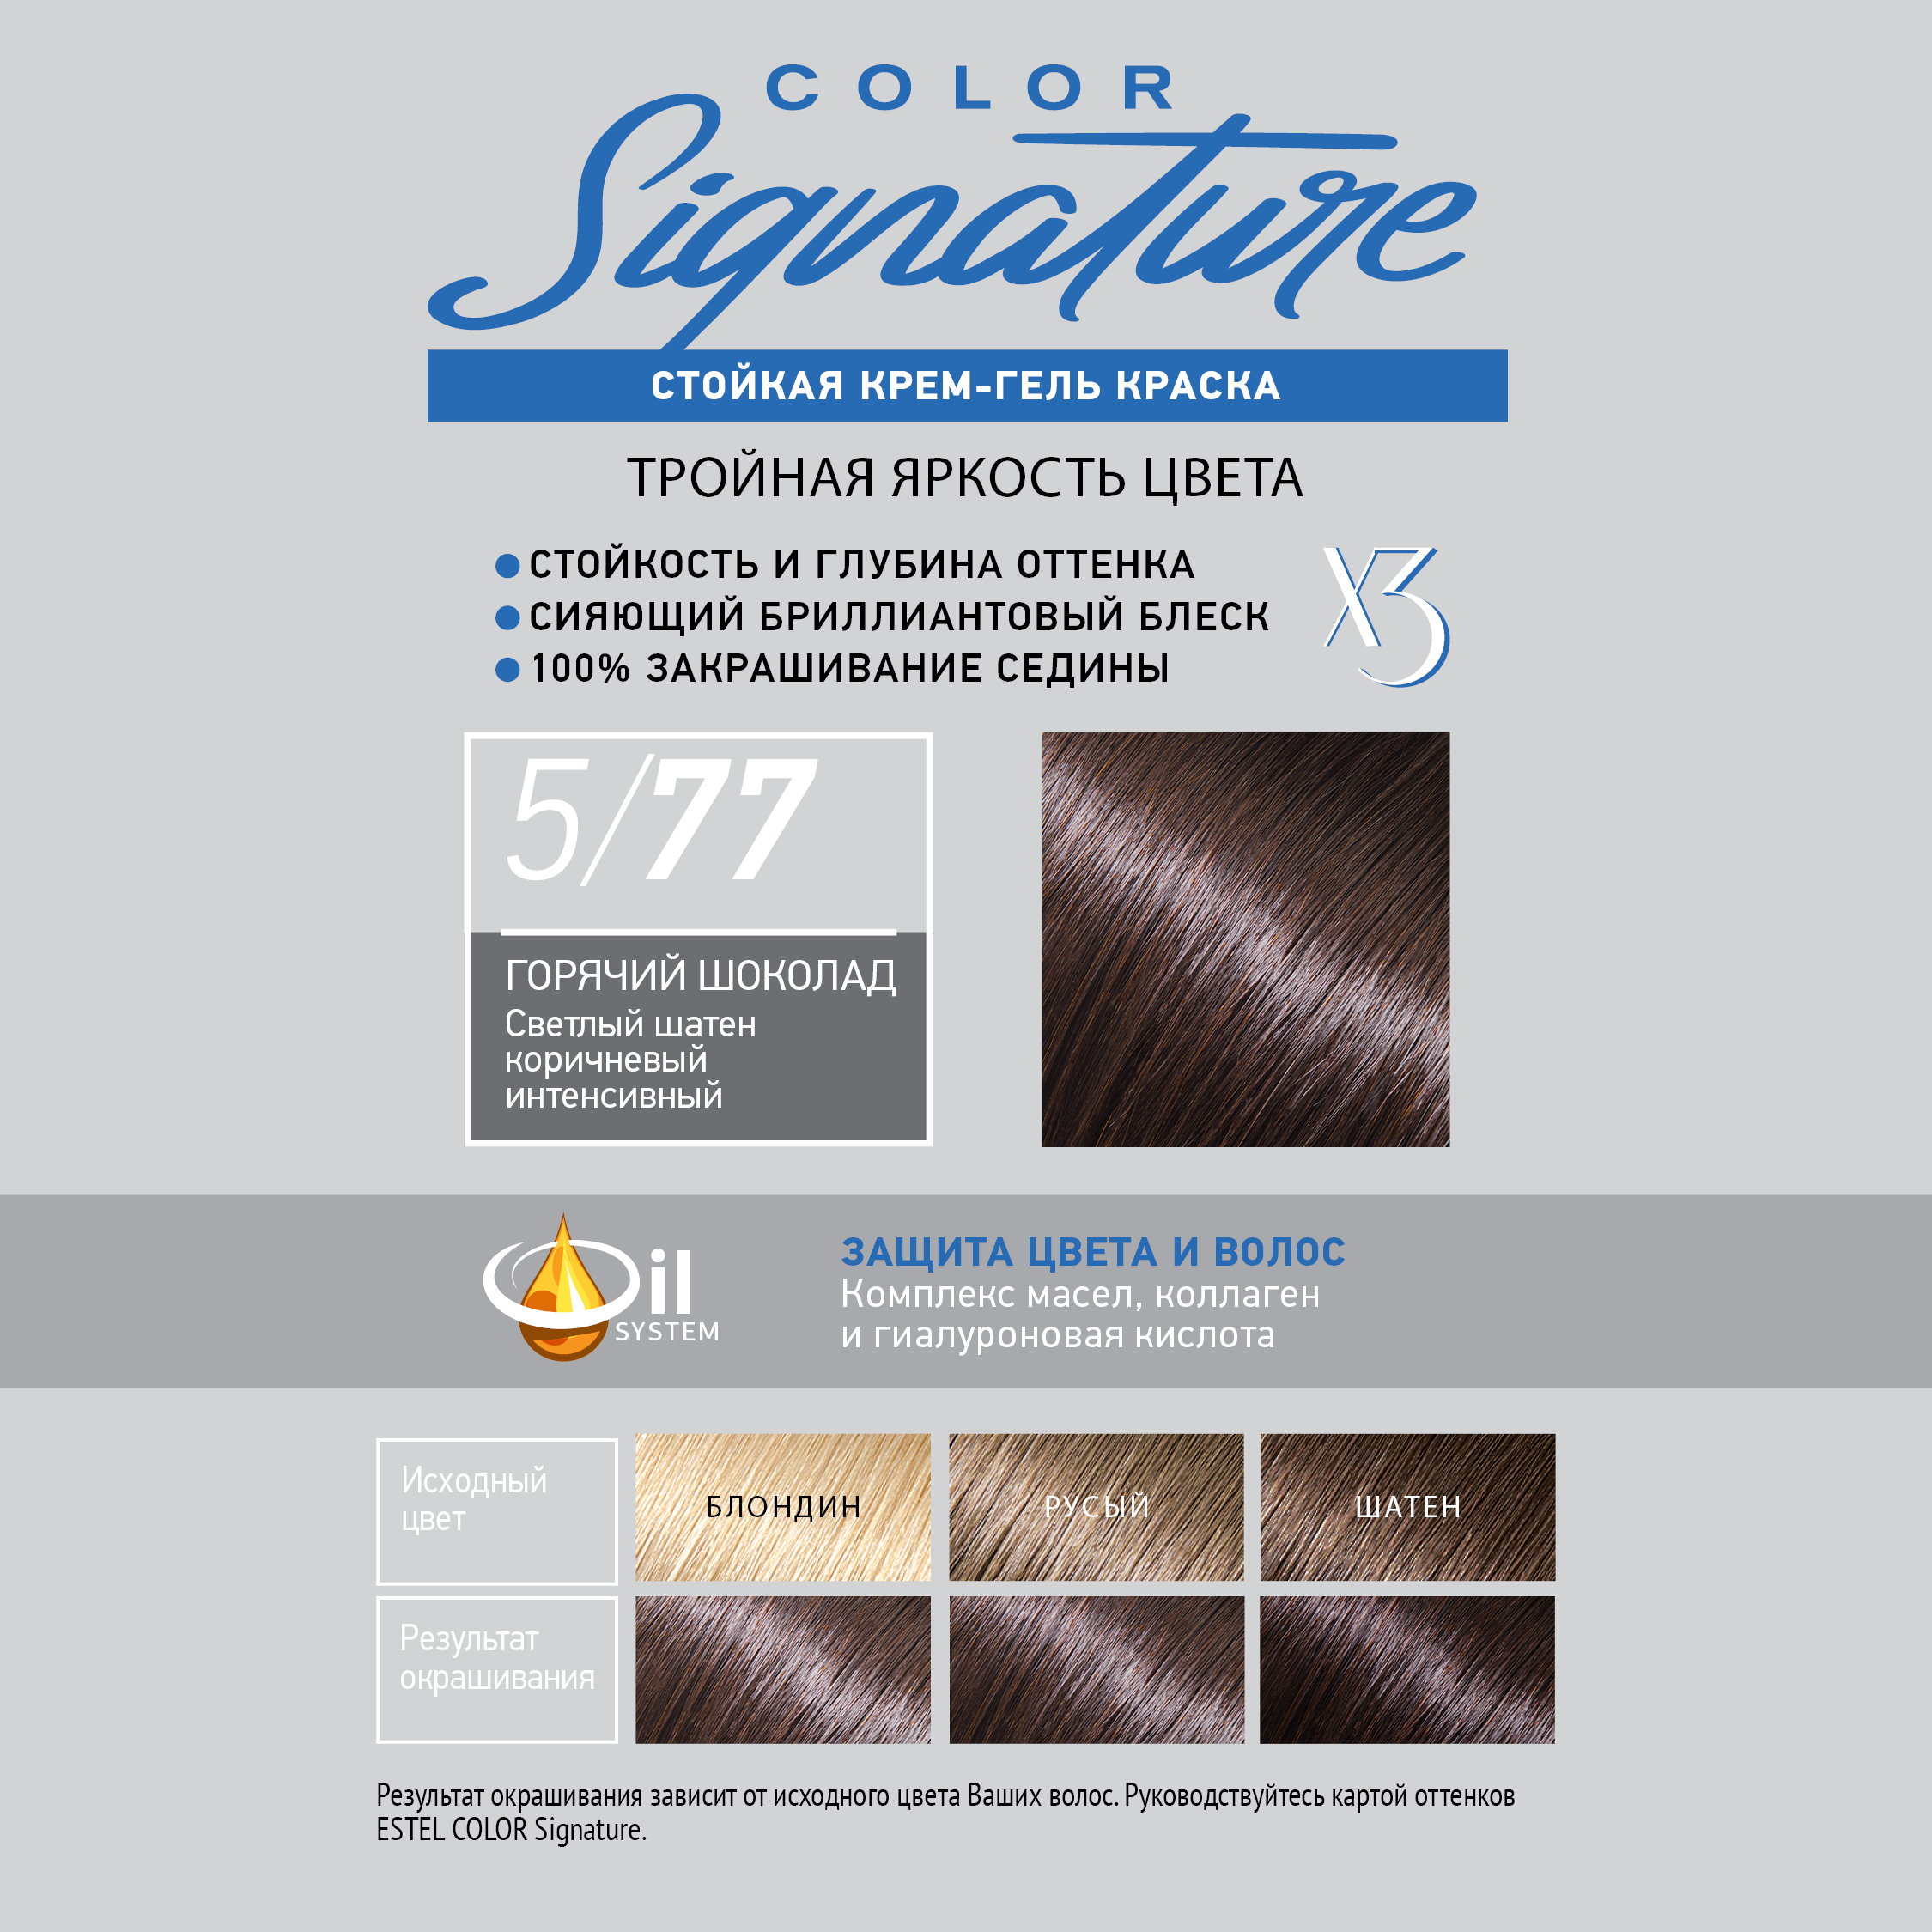 Краска для волос Estel Color Signature тон 5.77 горячий шоколад - в интернет-магазине TUT-BEAUTY.BY с доставкой.